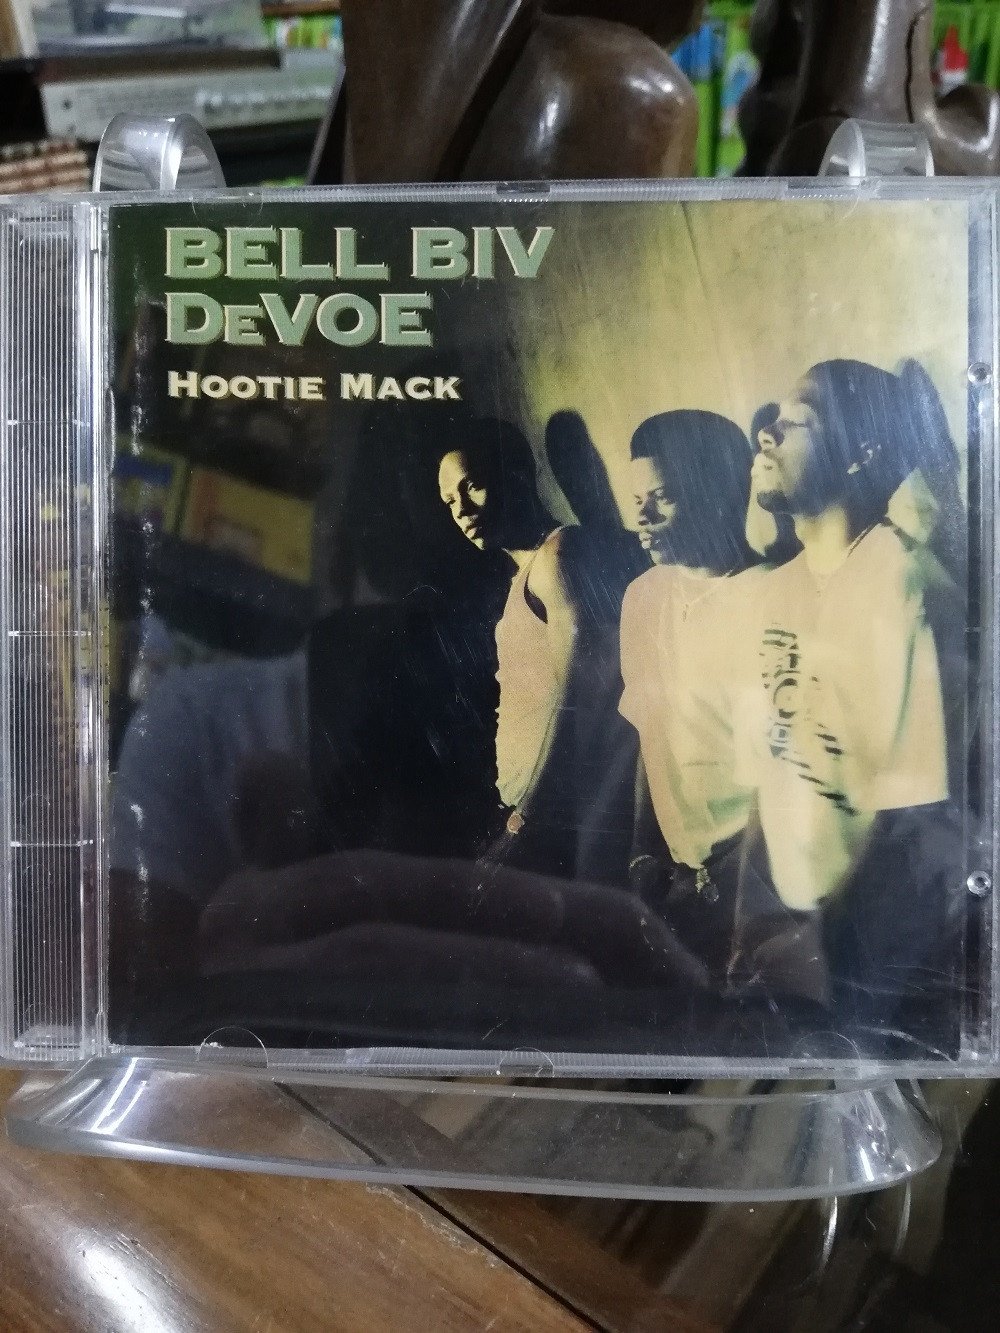 Imagen CD BELL BIV DEVOE - HOOTIE MACK 1